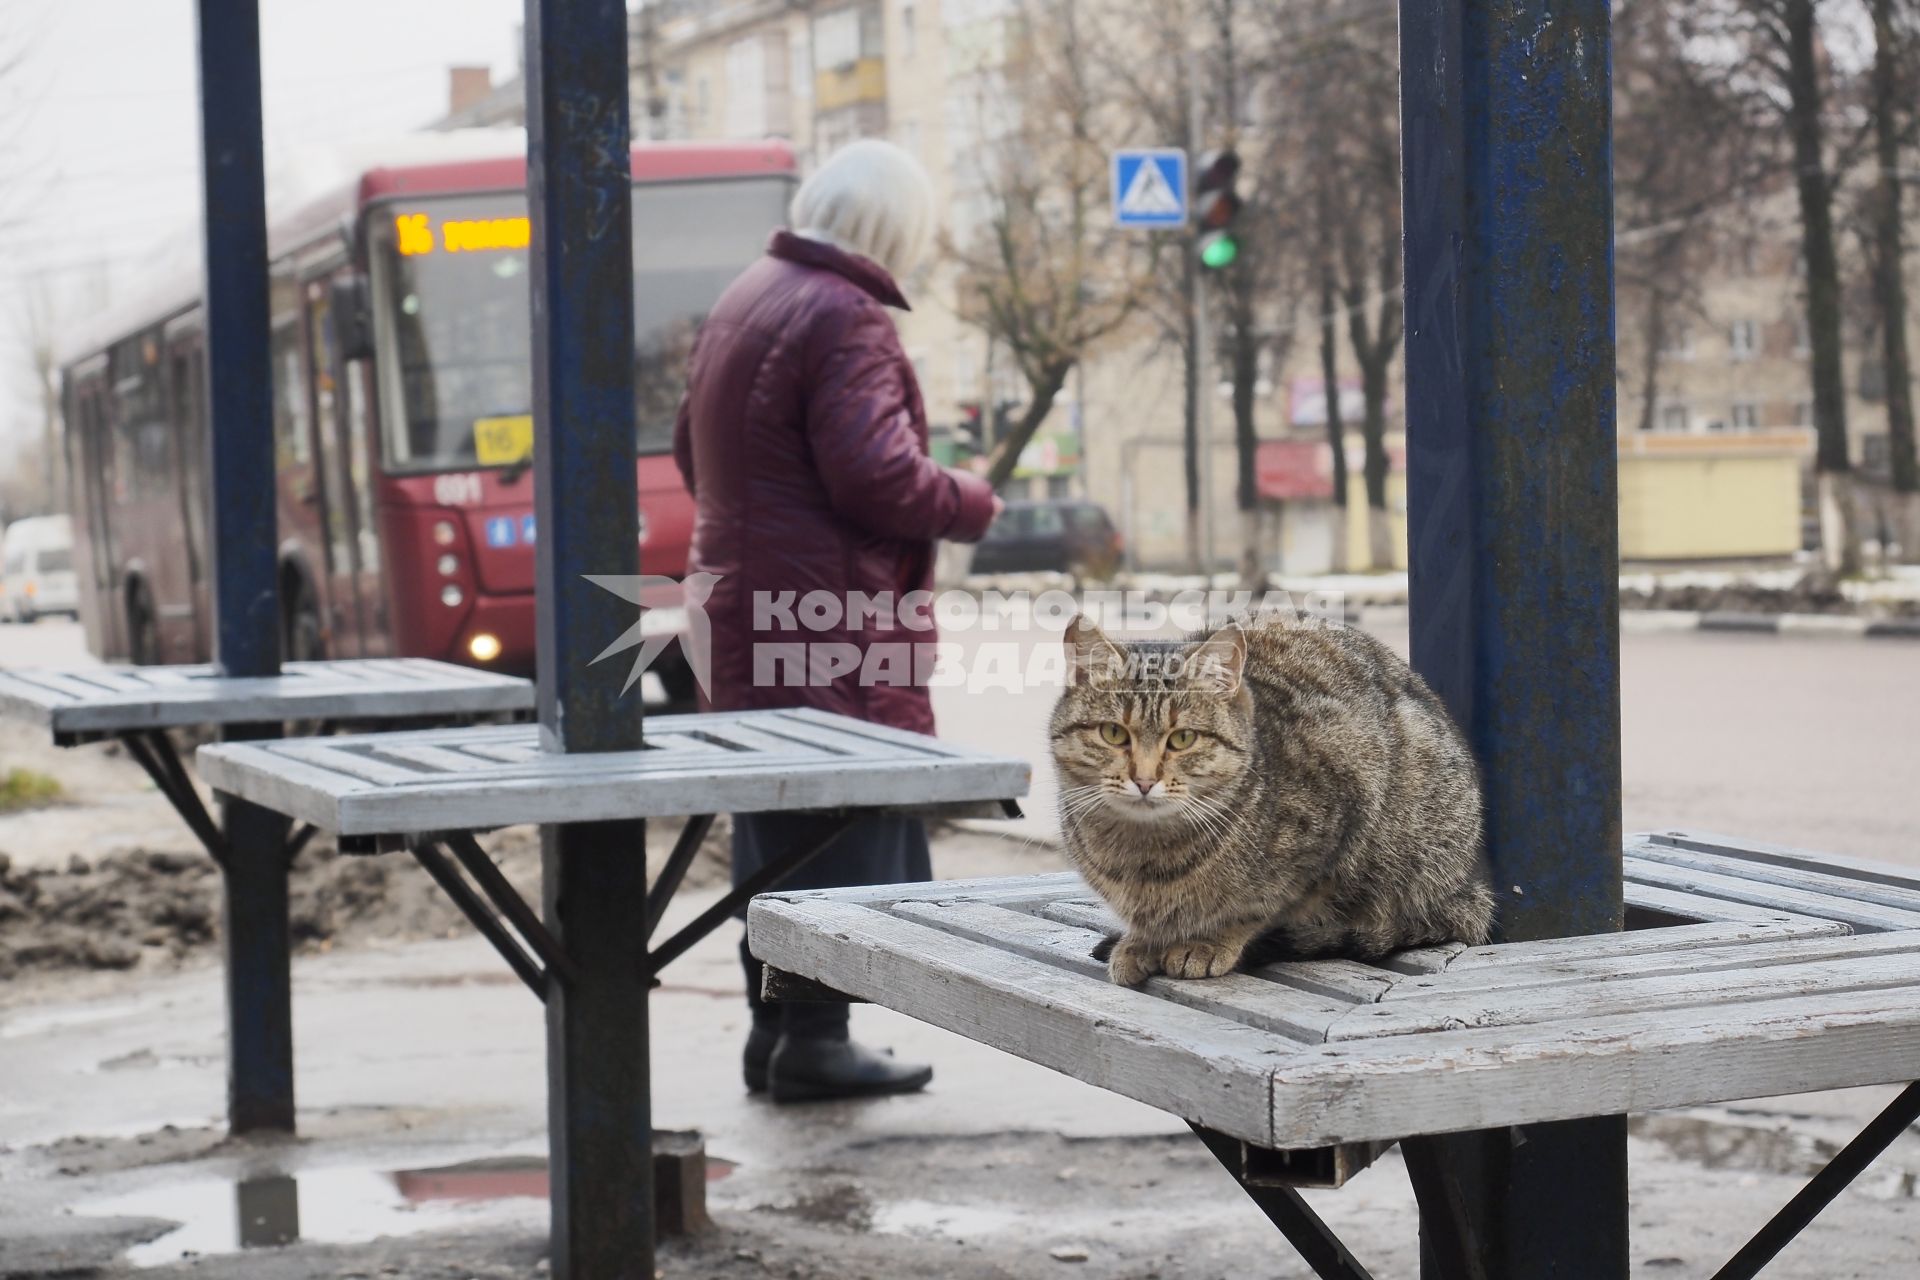 Тула. Уличный кот сидит на автобусной остановке.